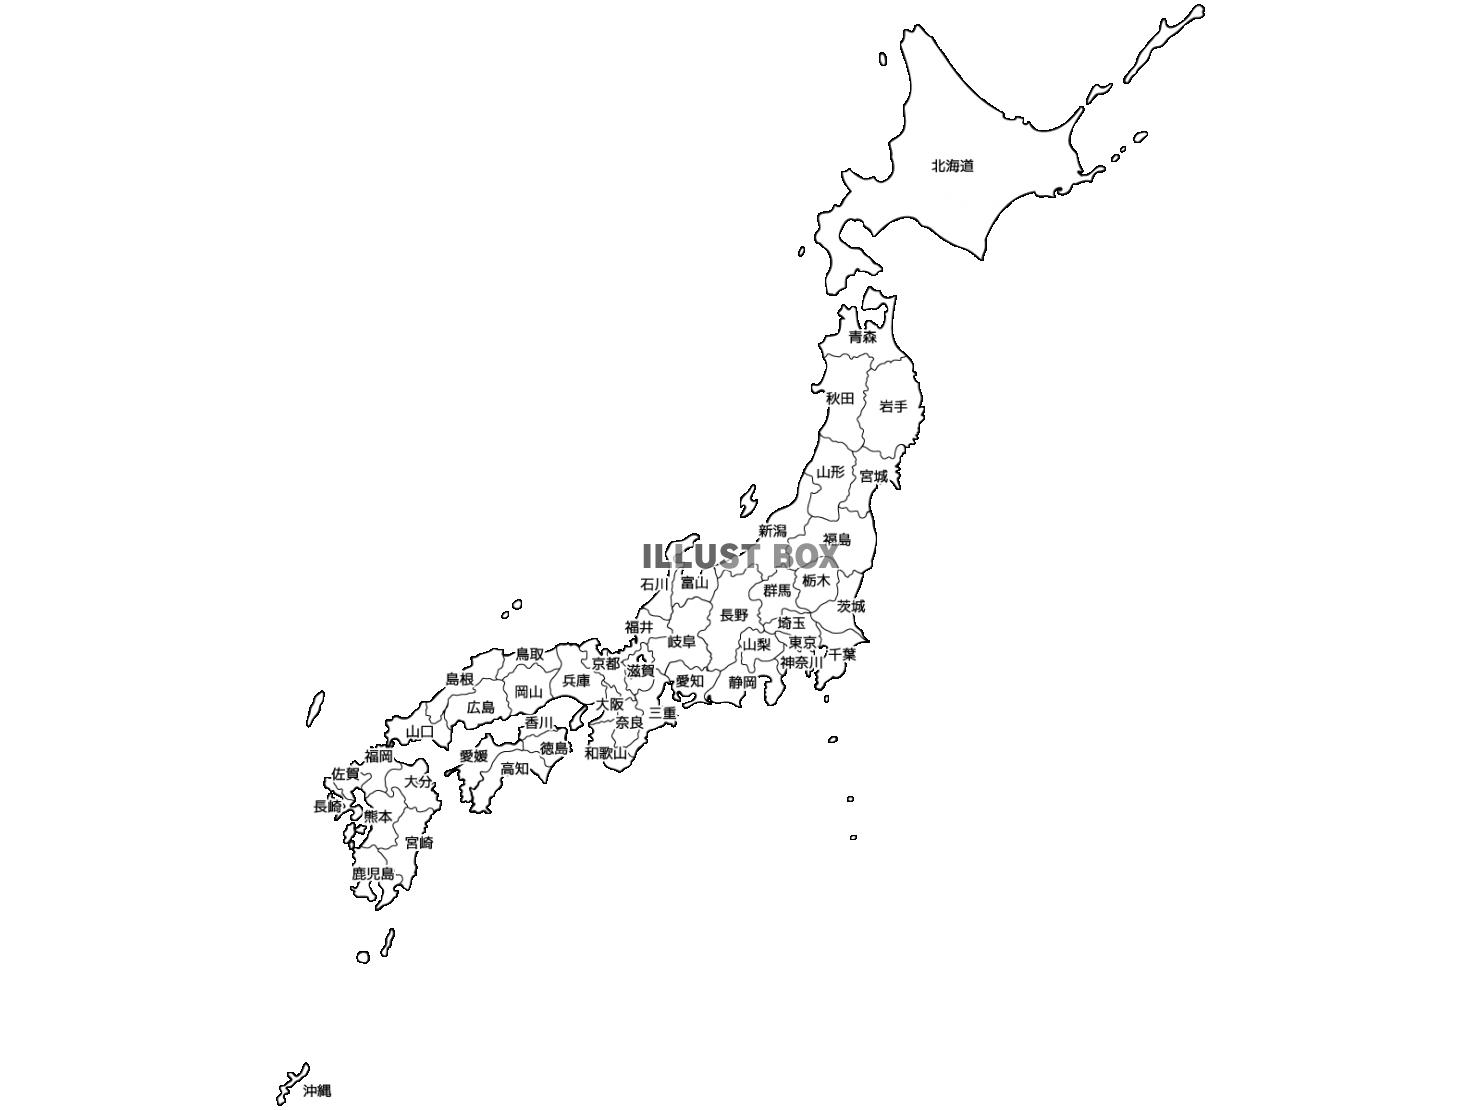 エレガント日本地図 壁紙 最高の壁紙コレクション